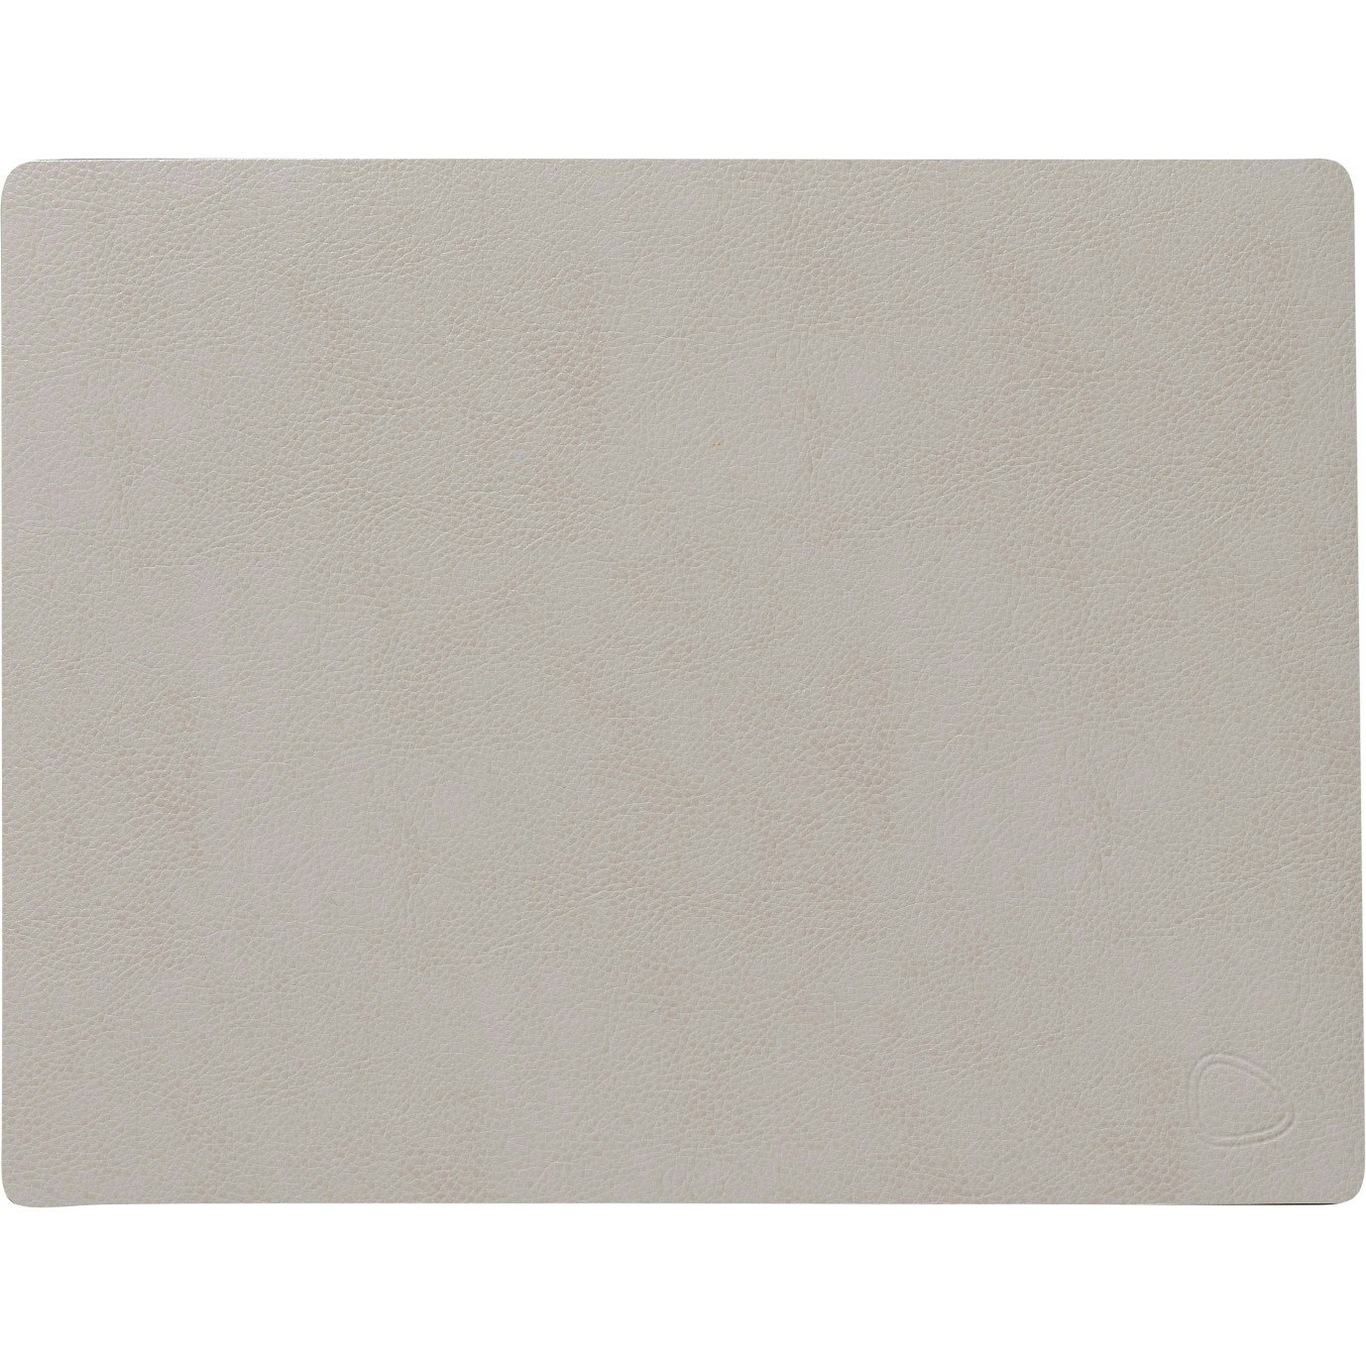 Square Tabletti Serene 26,5x34,5 cm, Cream